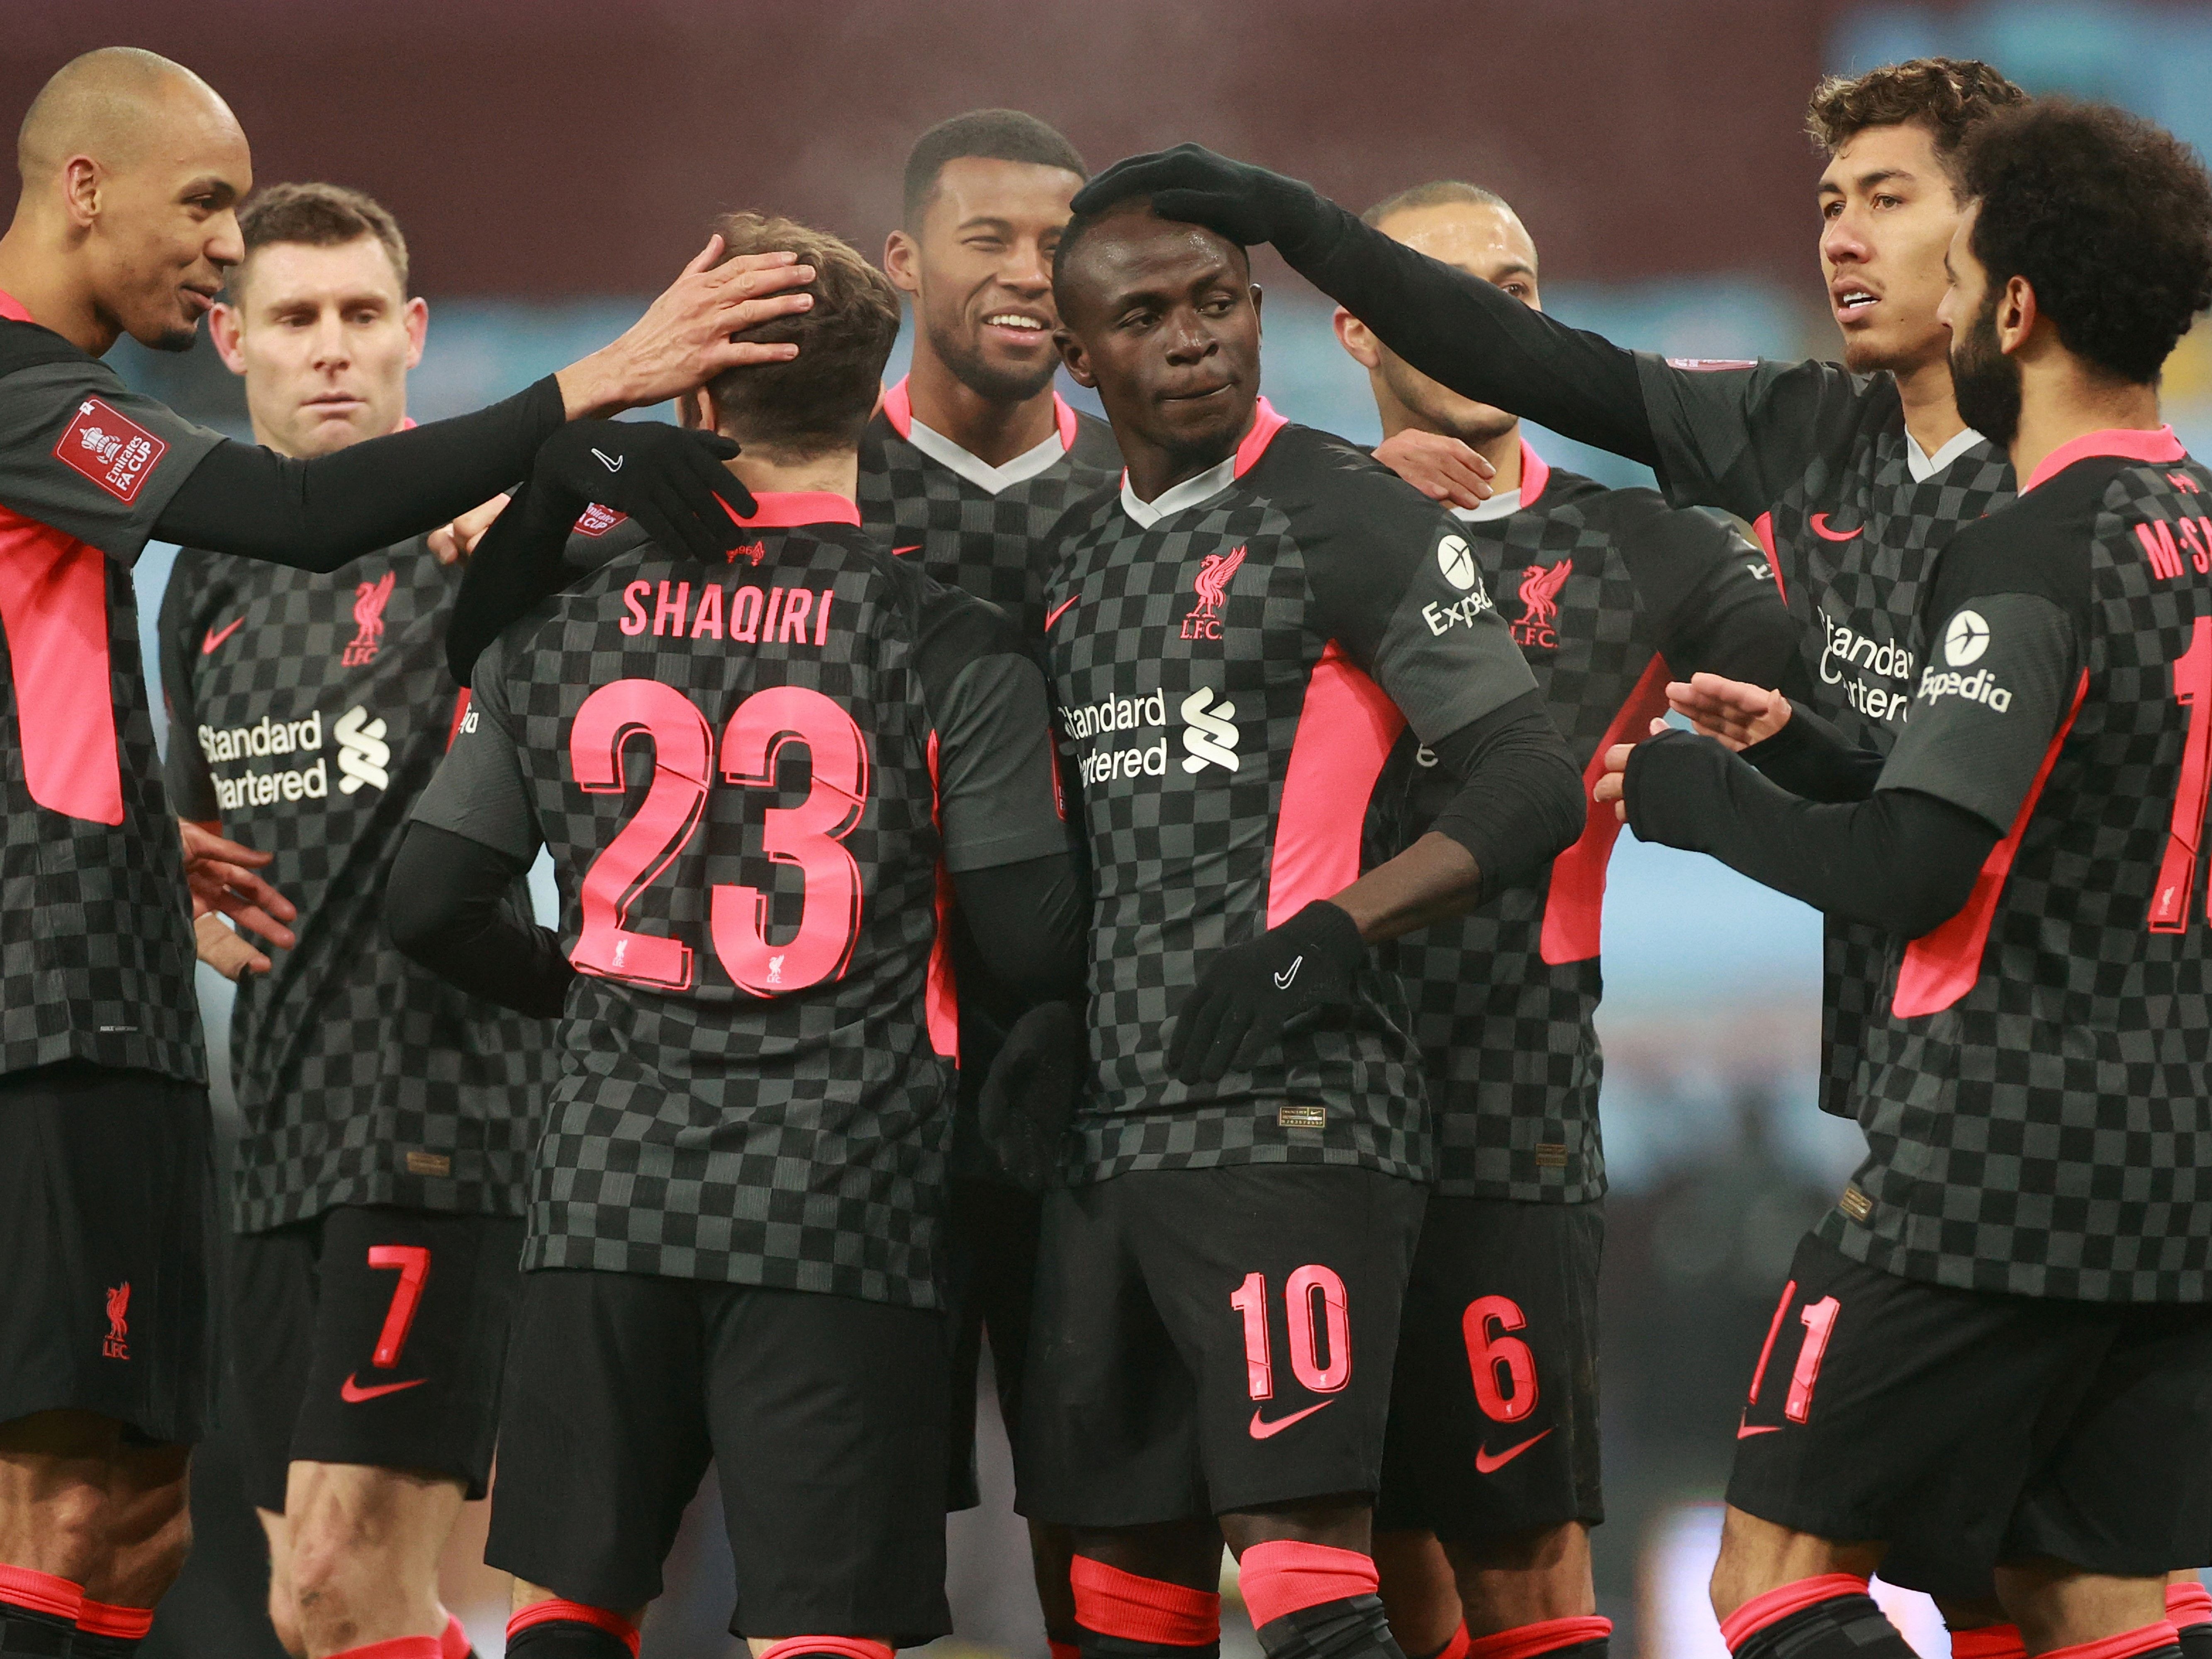 Liverpool celebrate scoring a goal